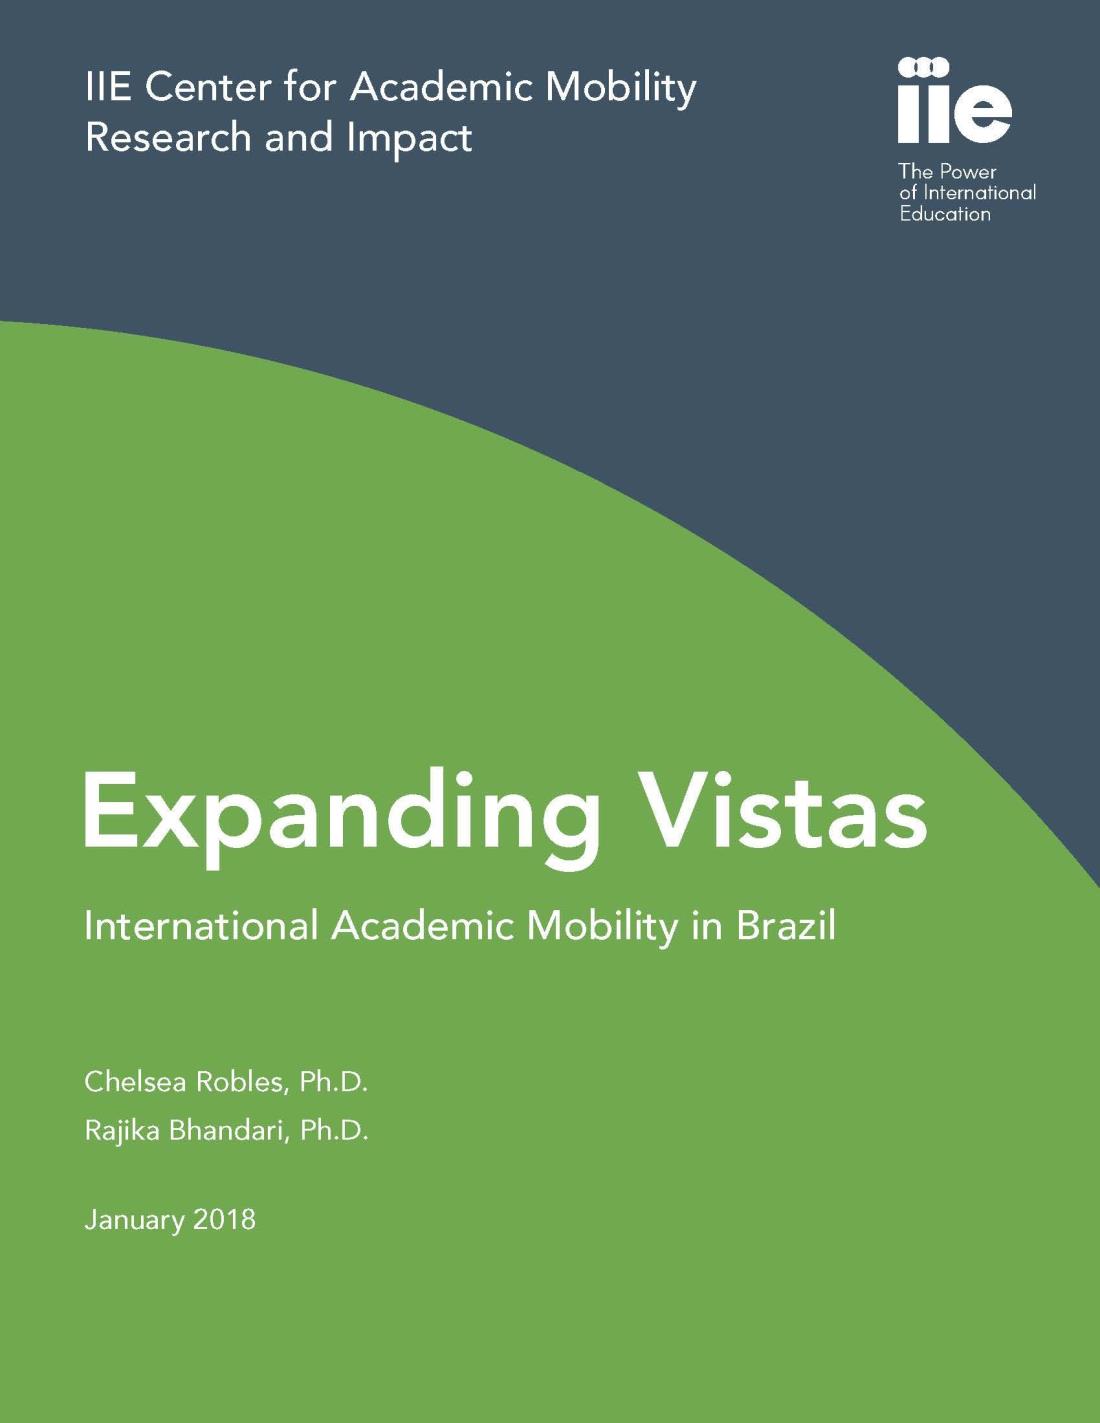 Image: Expanding Vistas Report Cover 